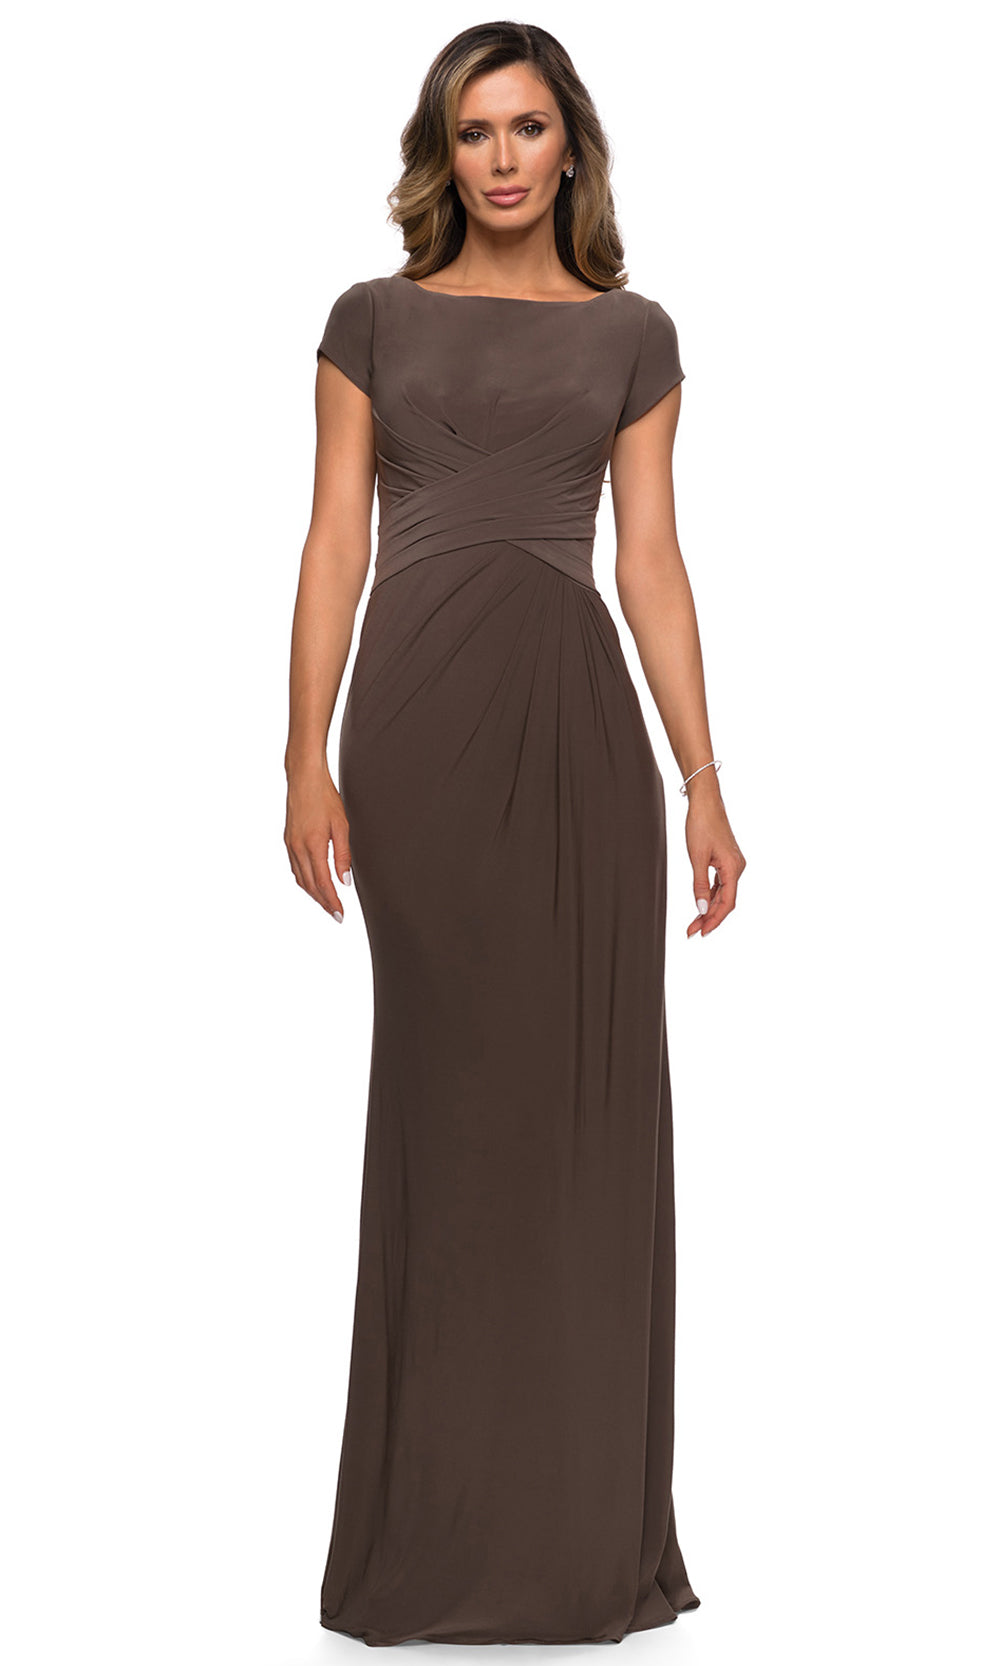 La Femme - 28026 Cap Sleeve Jersey Long Formal Dress In Brown